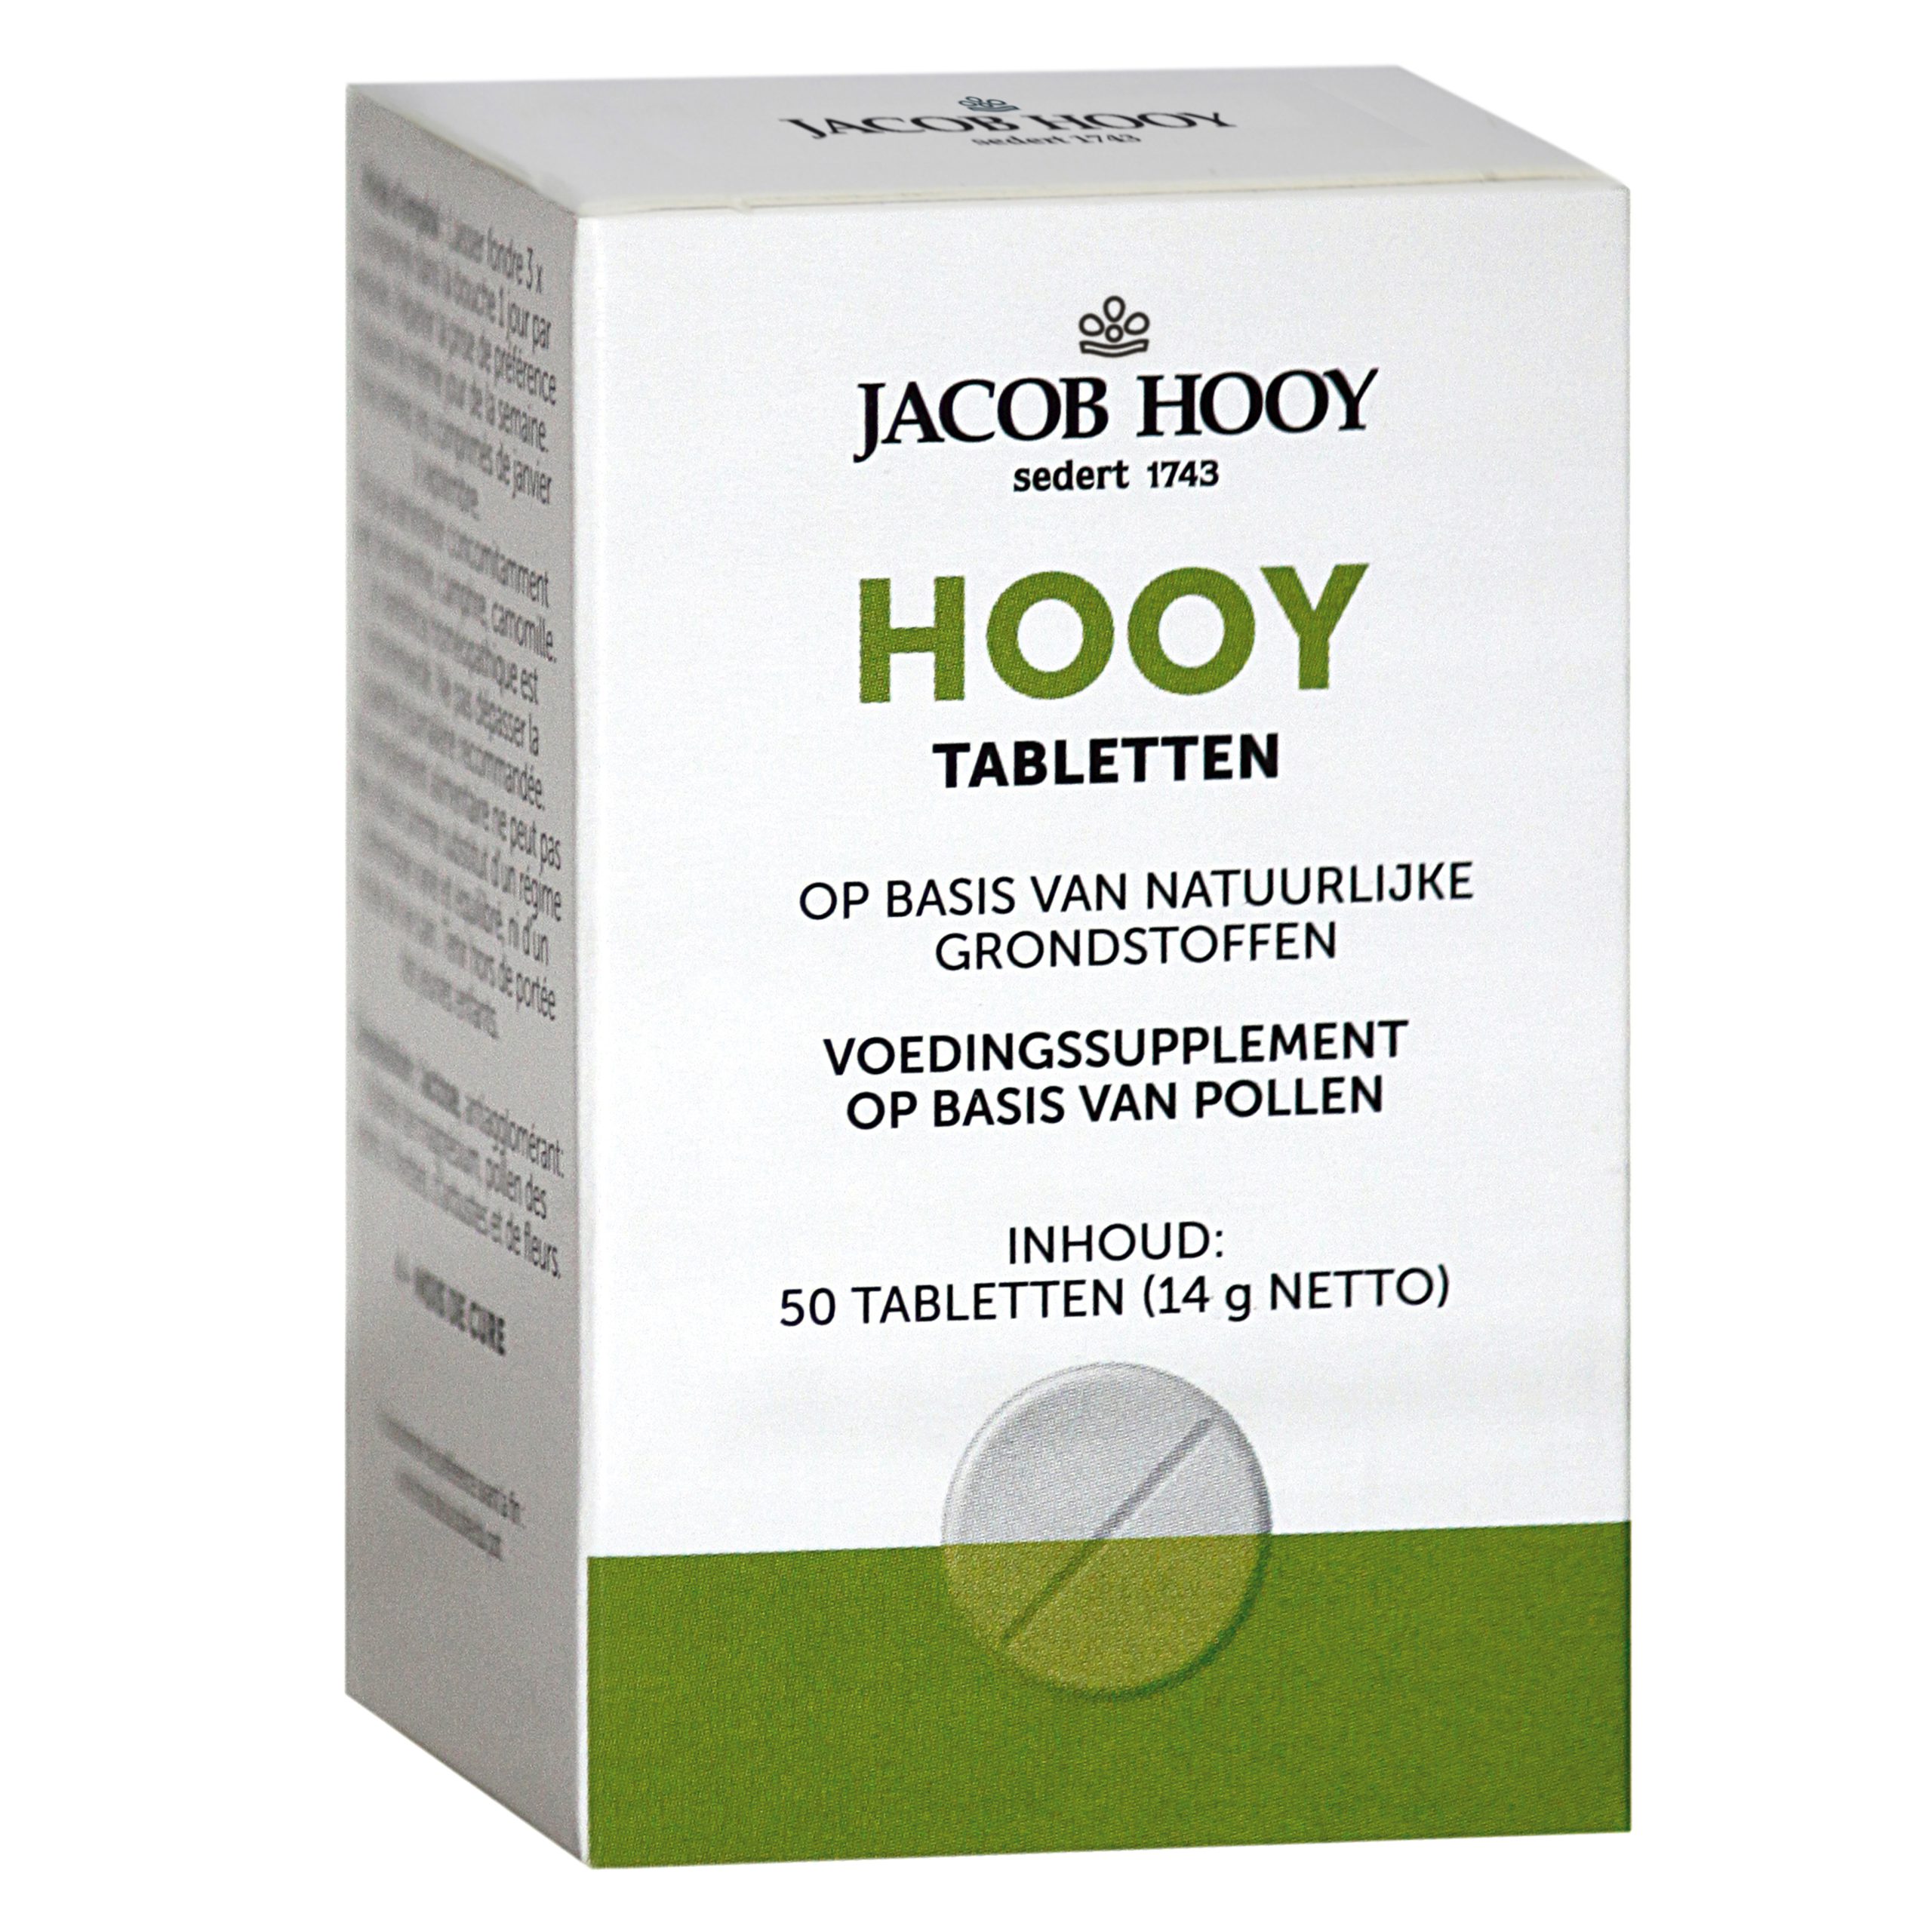 Hooy tabletten 4 maanden kuur (uitverkocht)